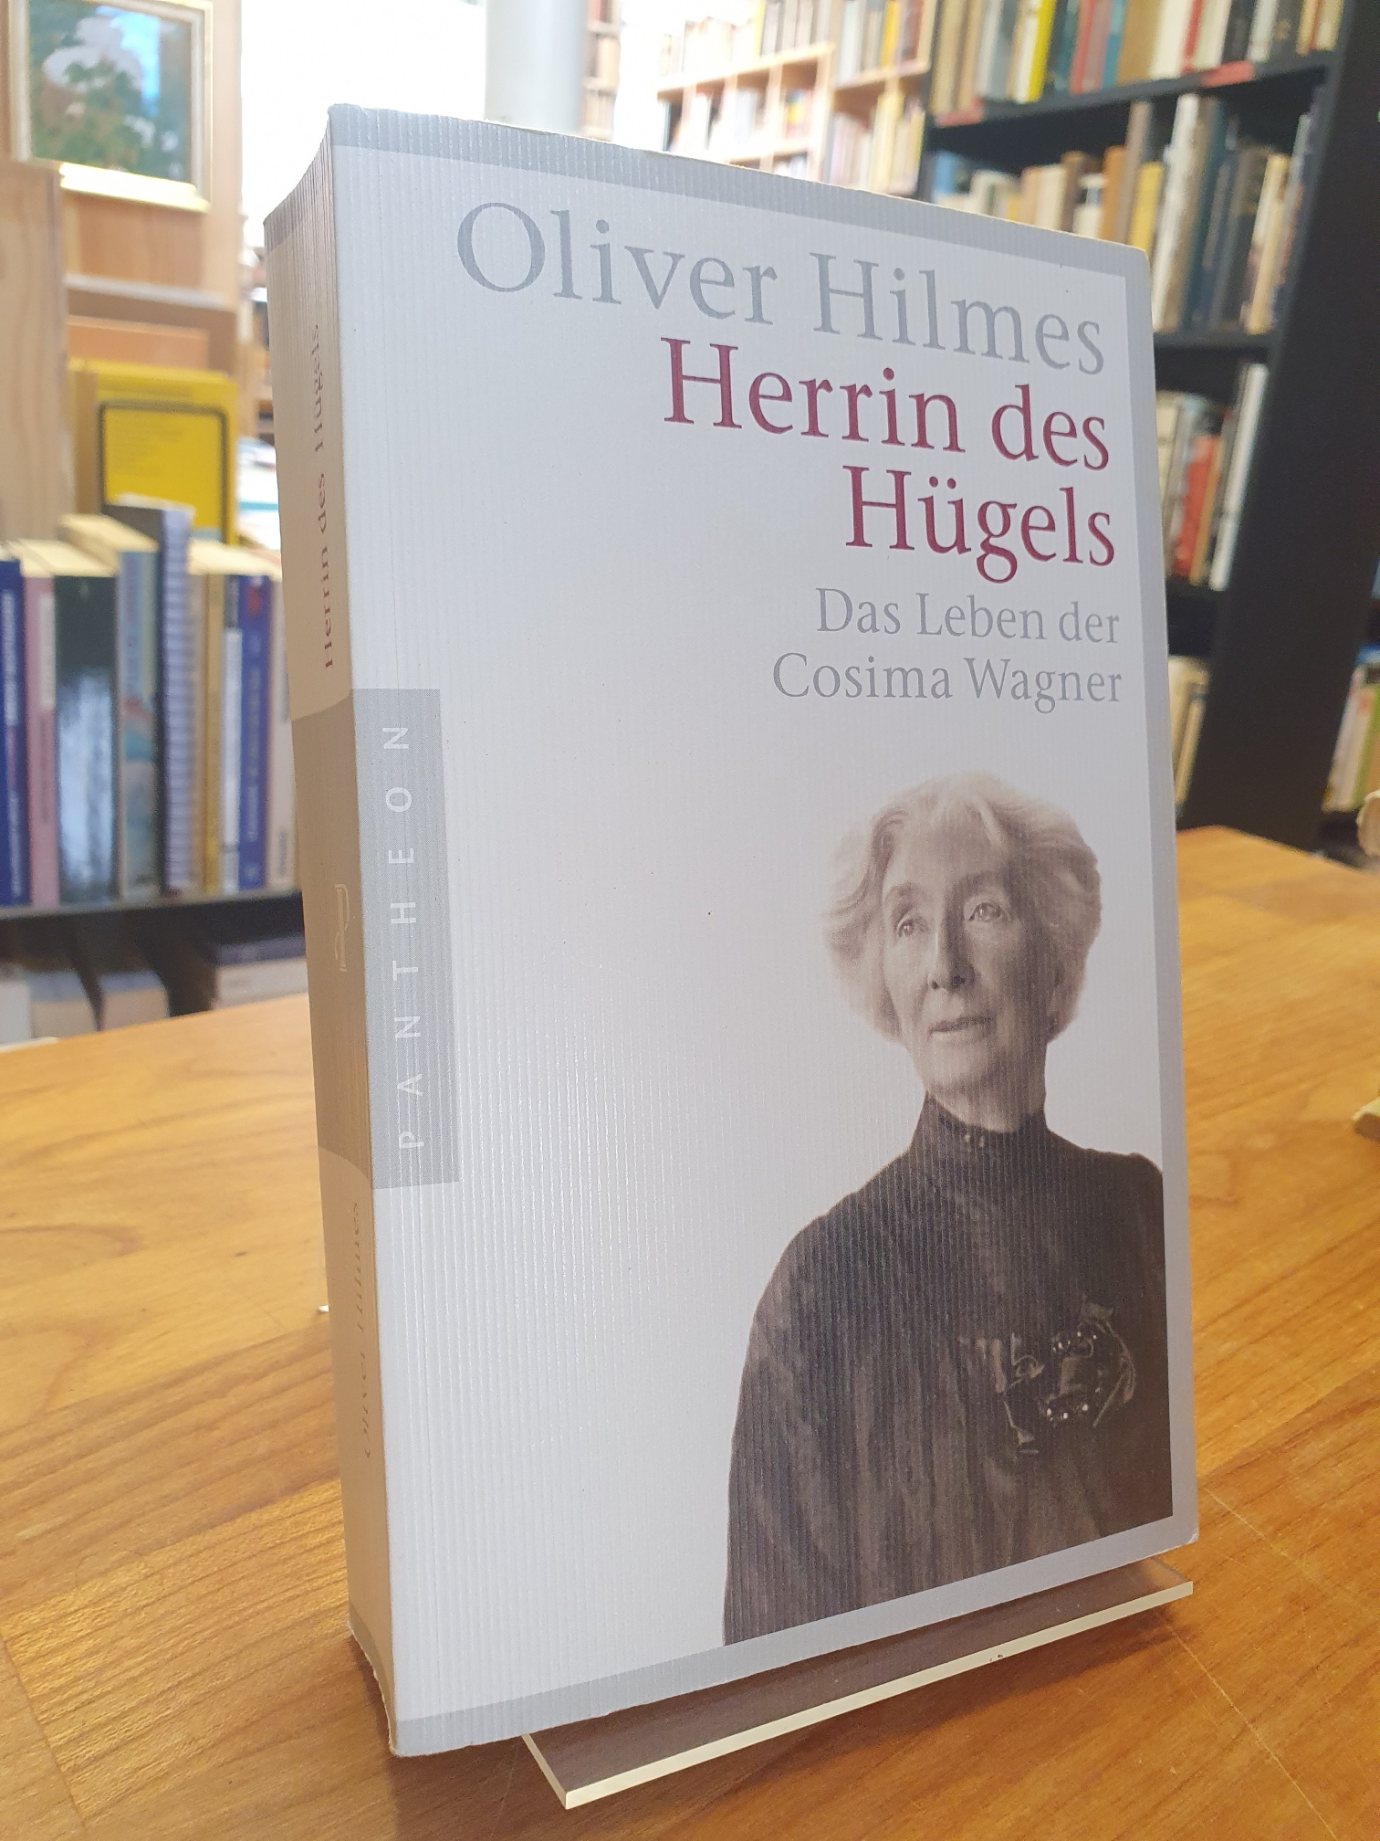 Hilmes, Herrin des Hügels – Das Leben der Cosima Wagner,